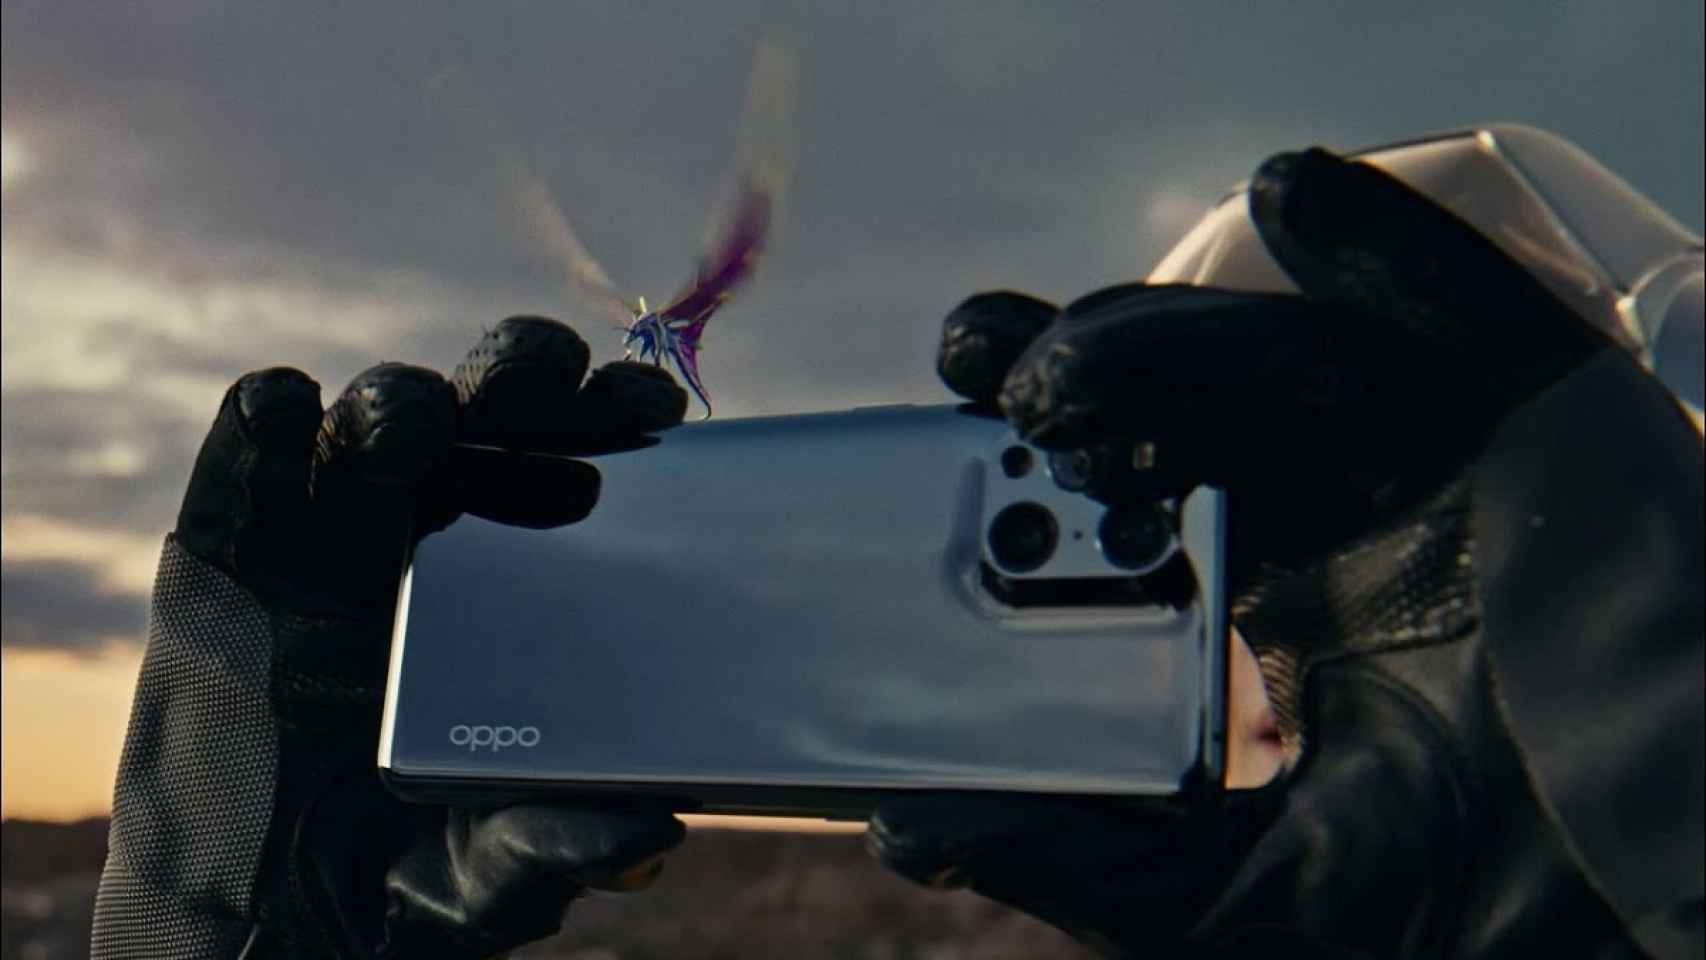 El primer vídeo oficial del OPPO Find X3 Pro parece una peli de ciencia ficción